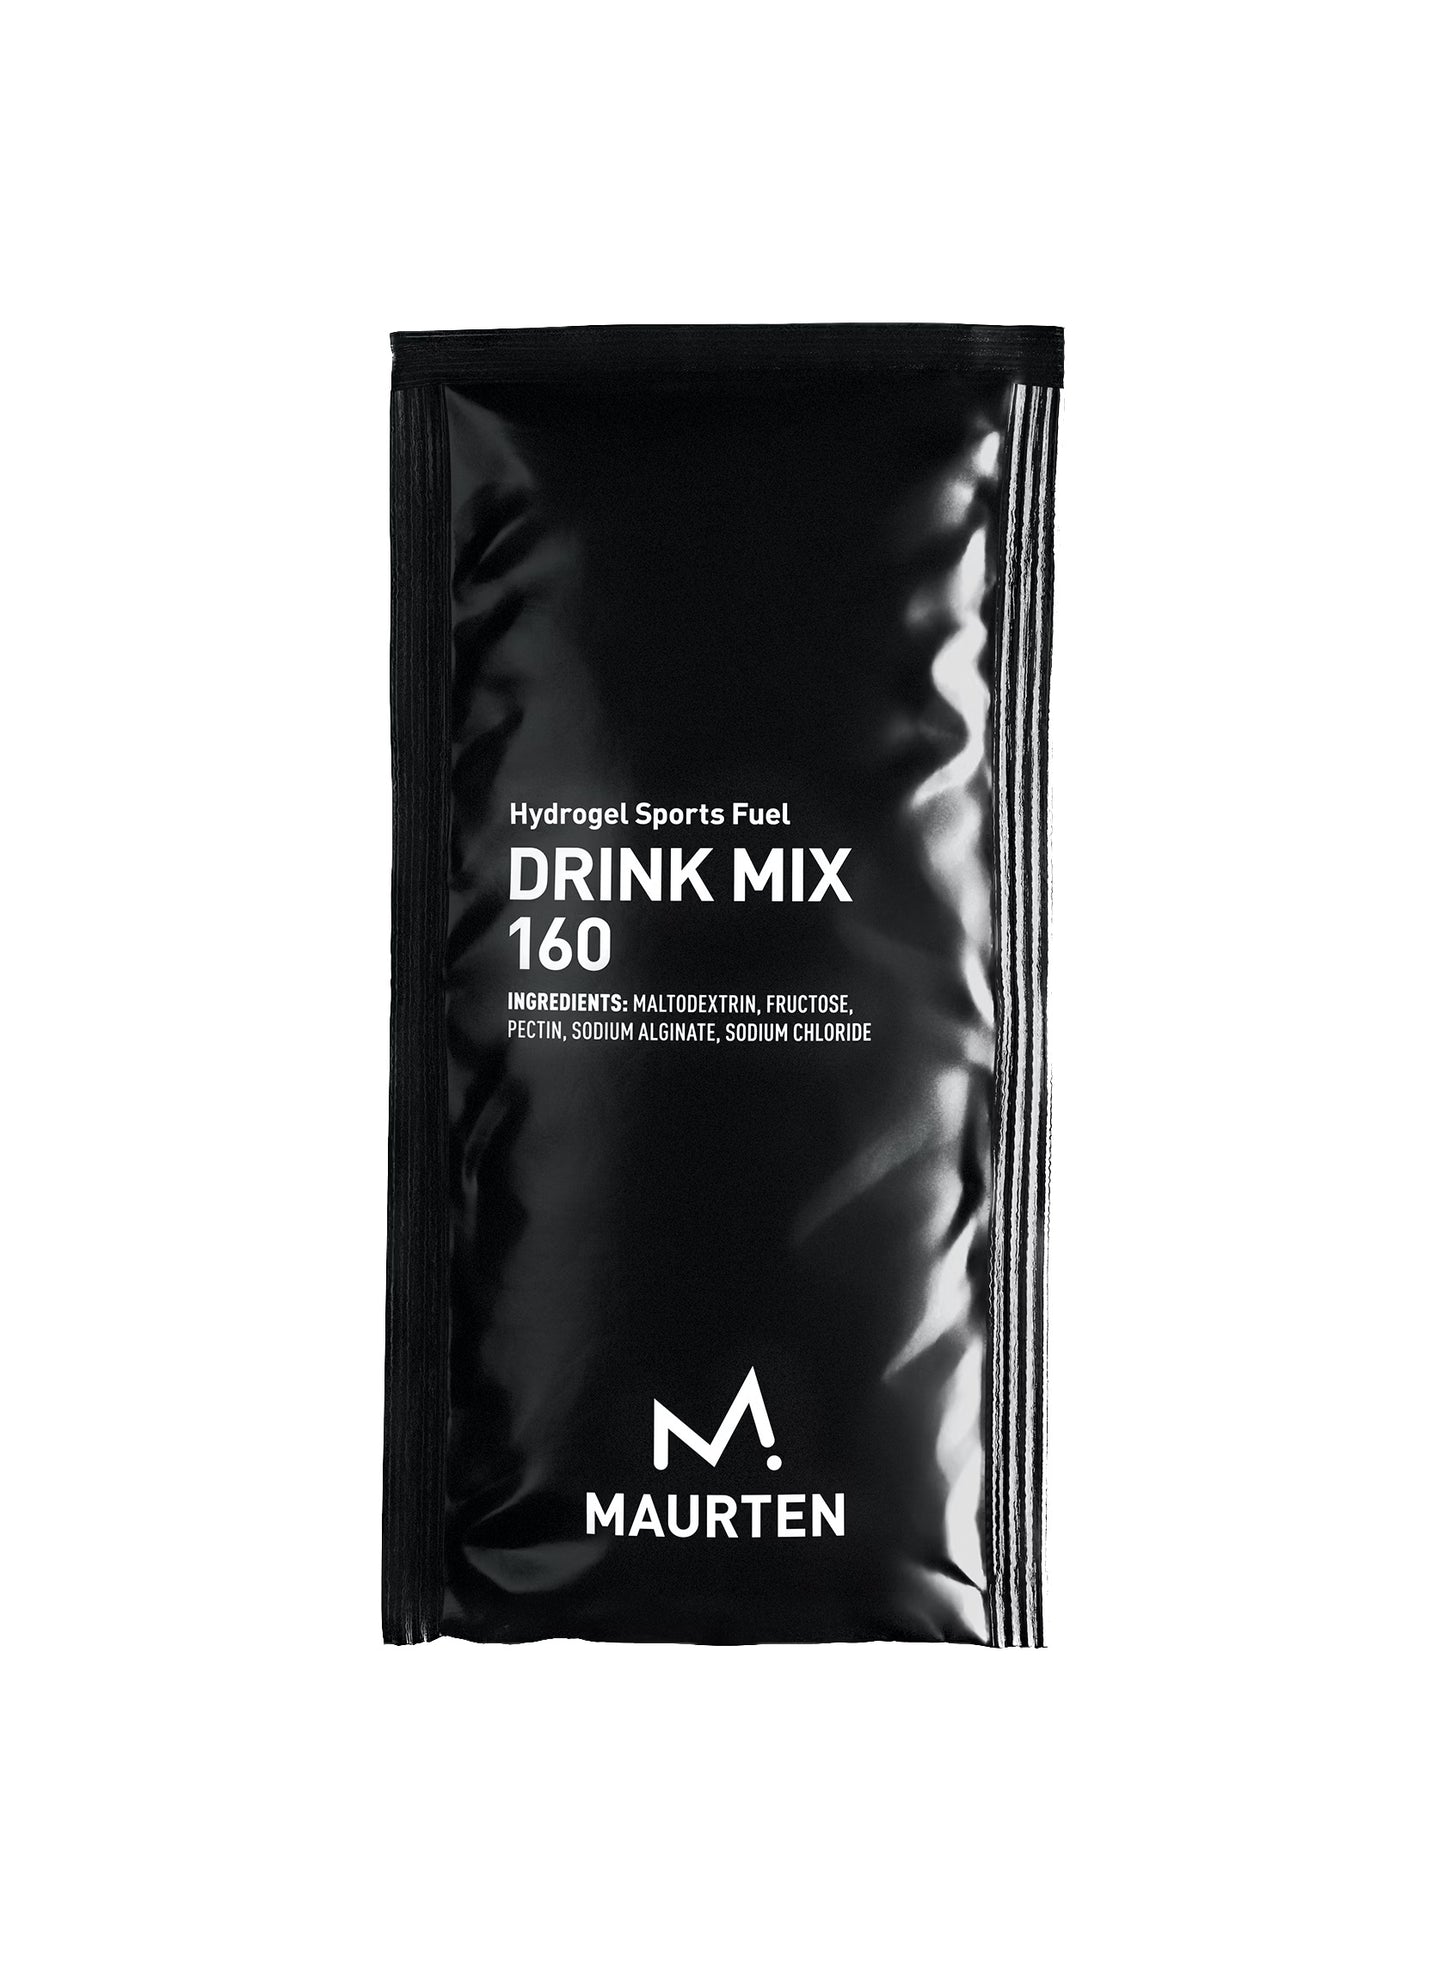 MAURTEN DRINK MIX 160